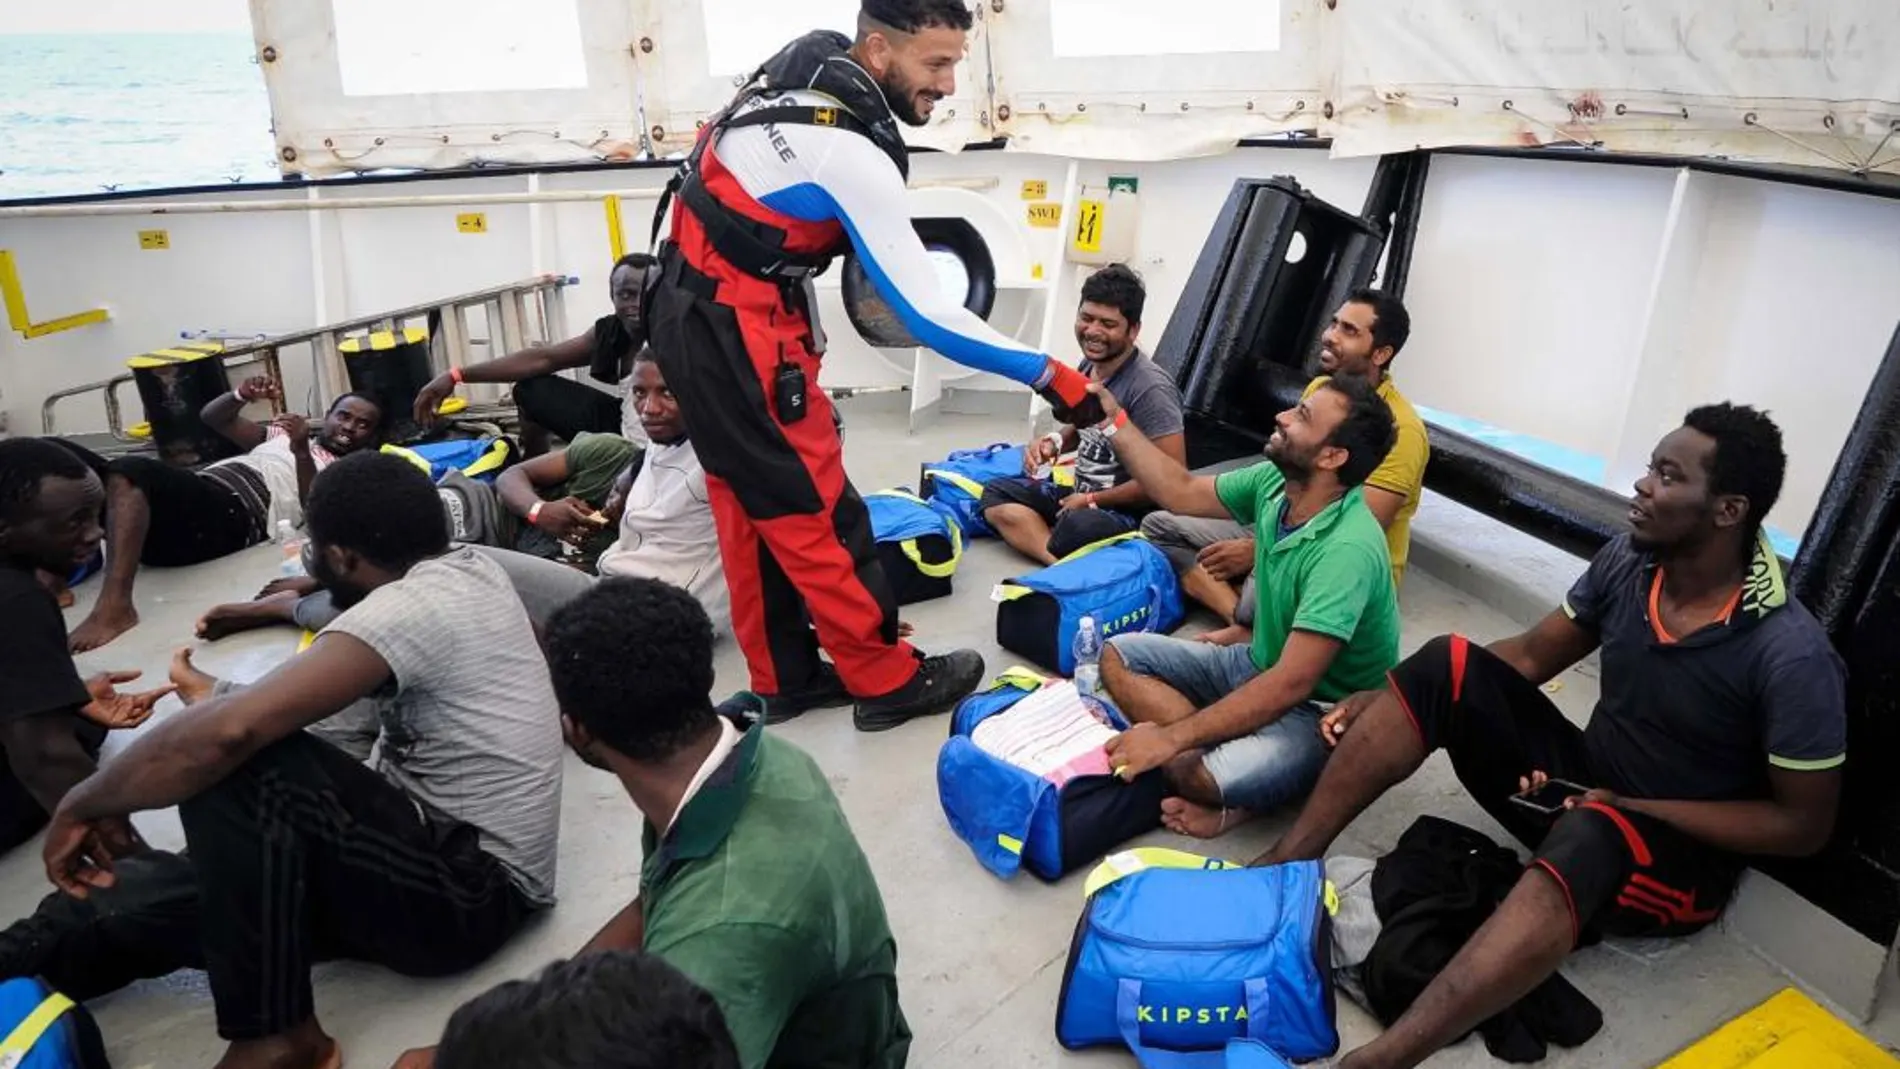 Fotografía cedida por la ONG SOS Mediterránée hoy, 13 de agosto del 2018, muestra a varios inmigrantes rescatados abordo del barco de rescate Aquarius.